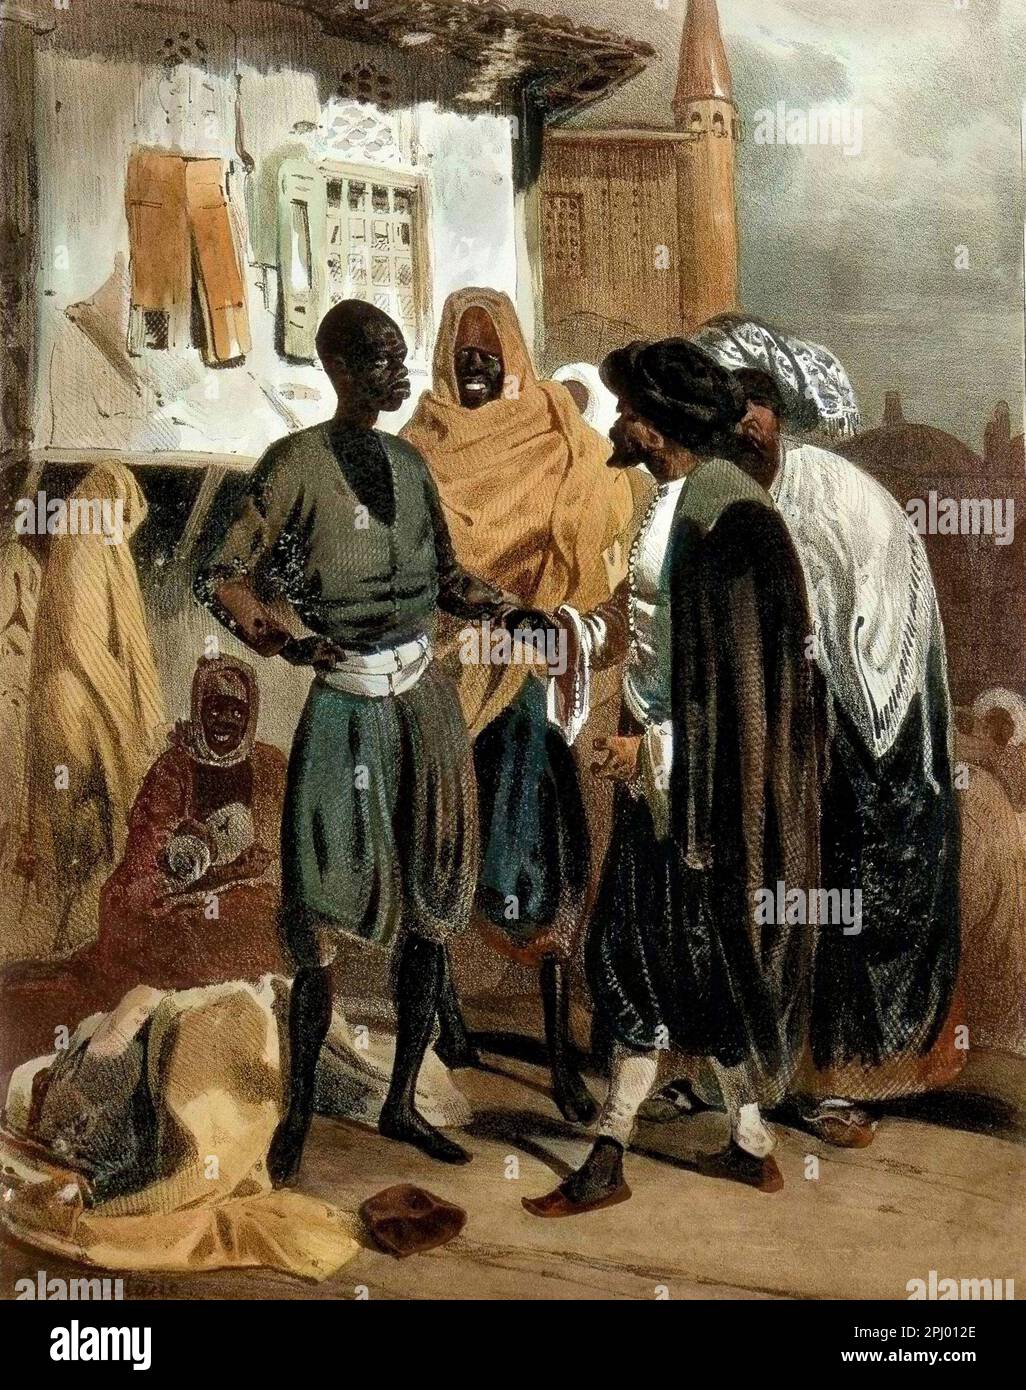 Marché d'esclaves à AK Hissar en Turquie vers 1830. Dessin de th. Leblanc. – Mercato degli schiavi ad AK Hissar in Turchia intorno al 1830 Foto Stock